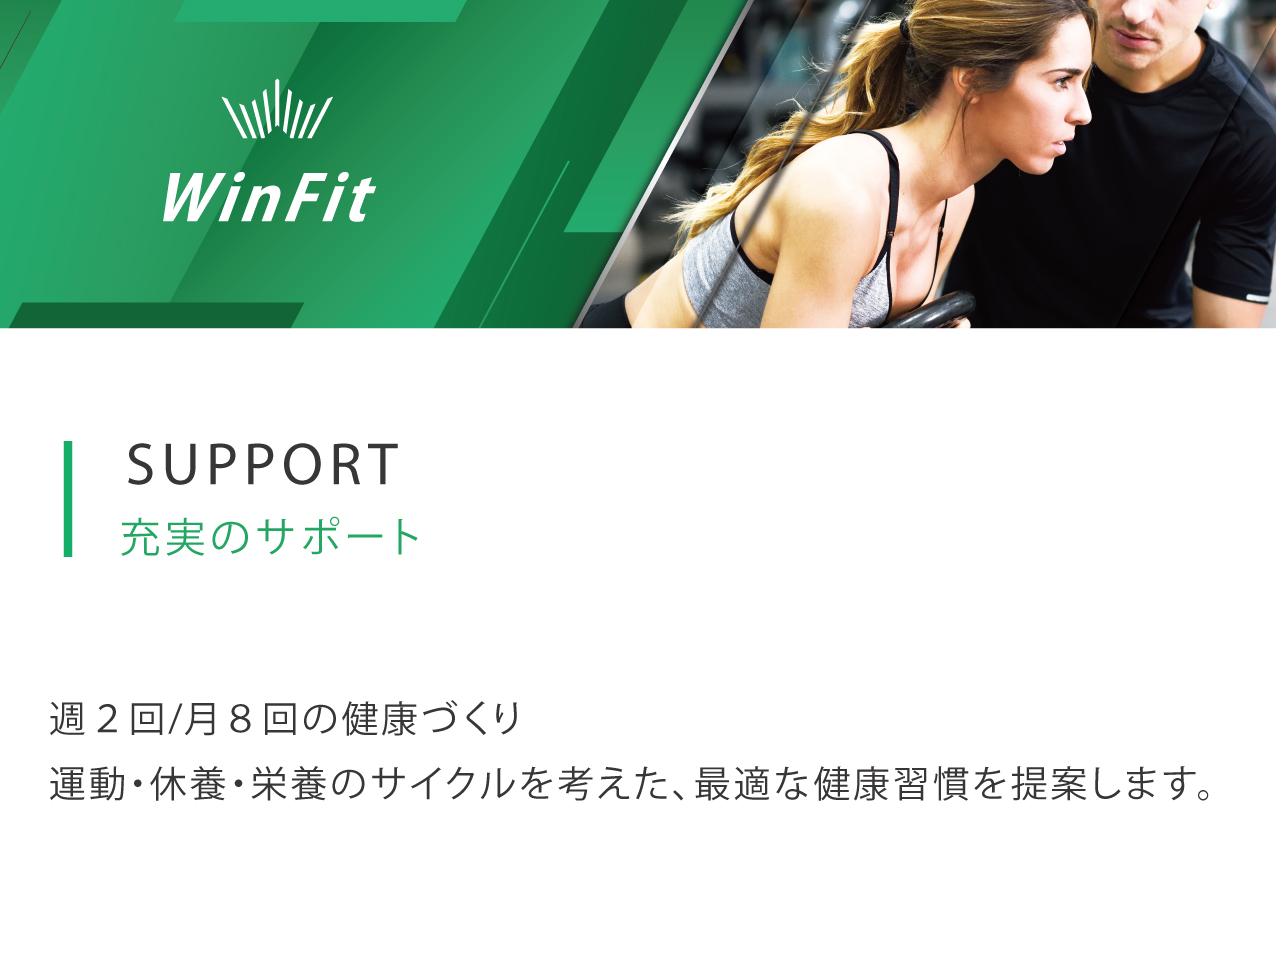 winfit/充実のサポート